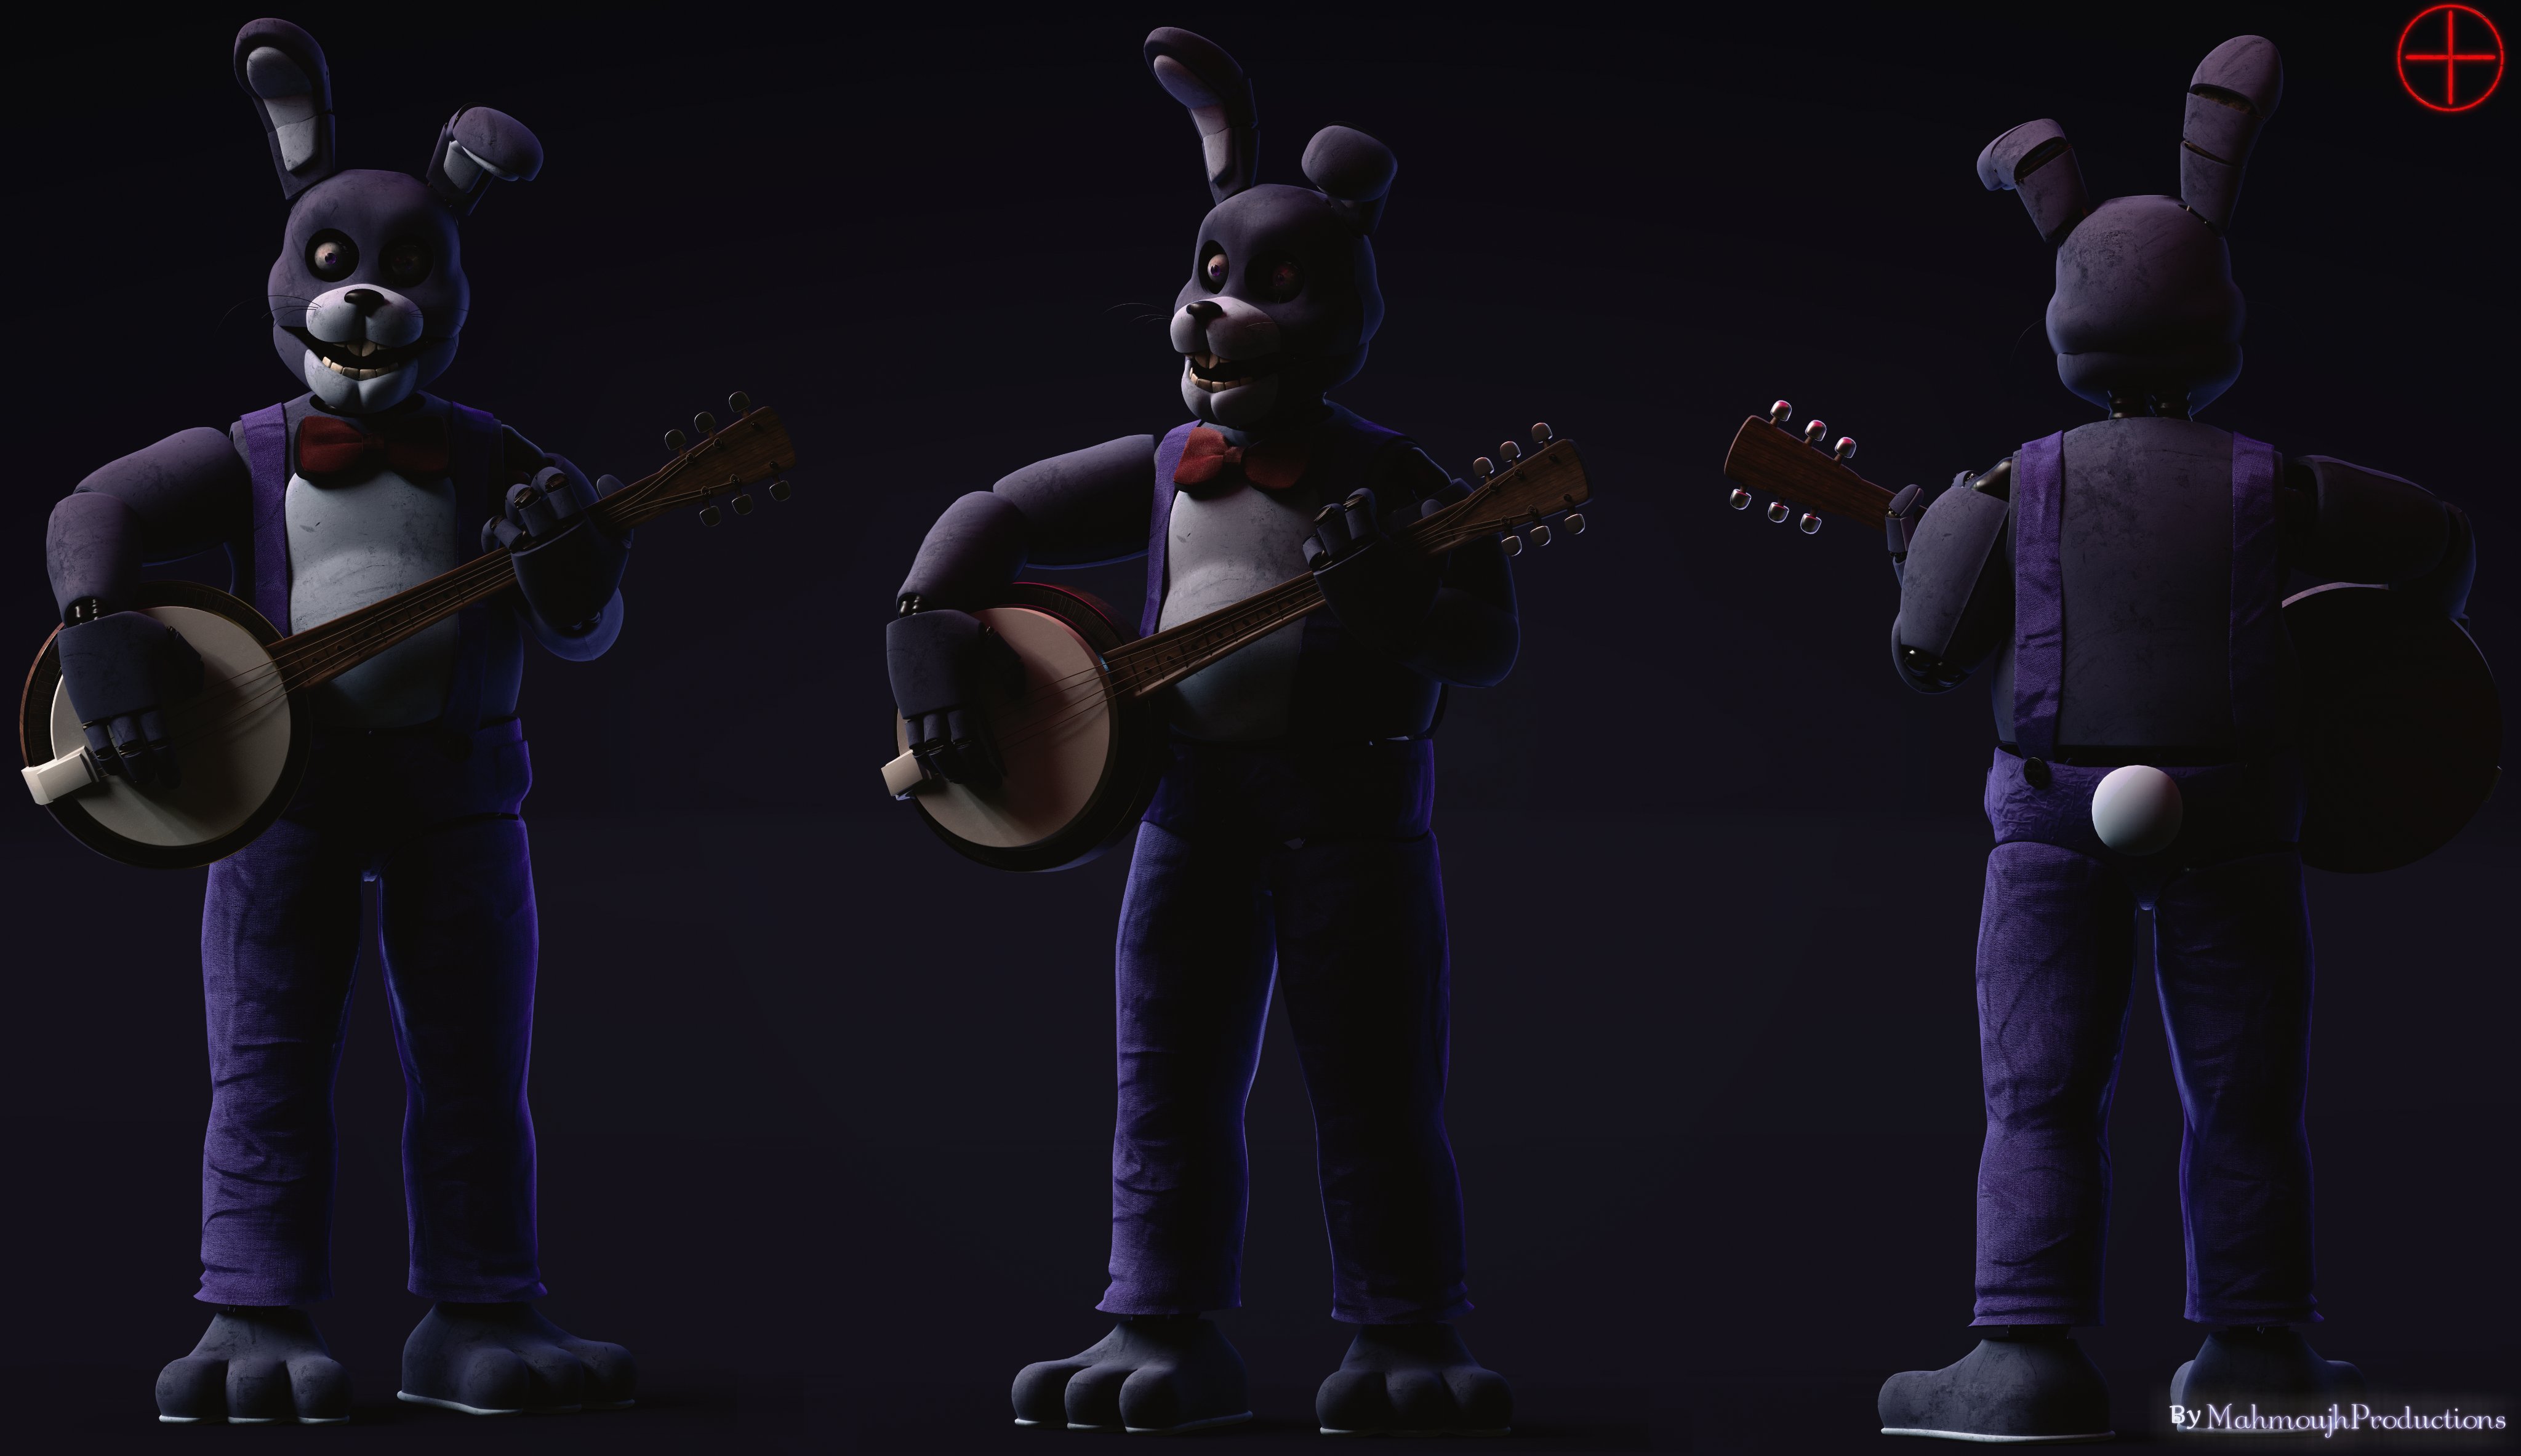 MiistNiight: Freddy and Bonnie performing!